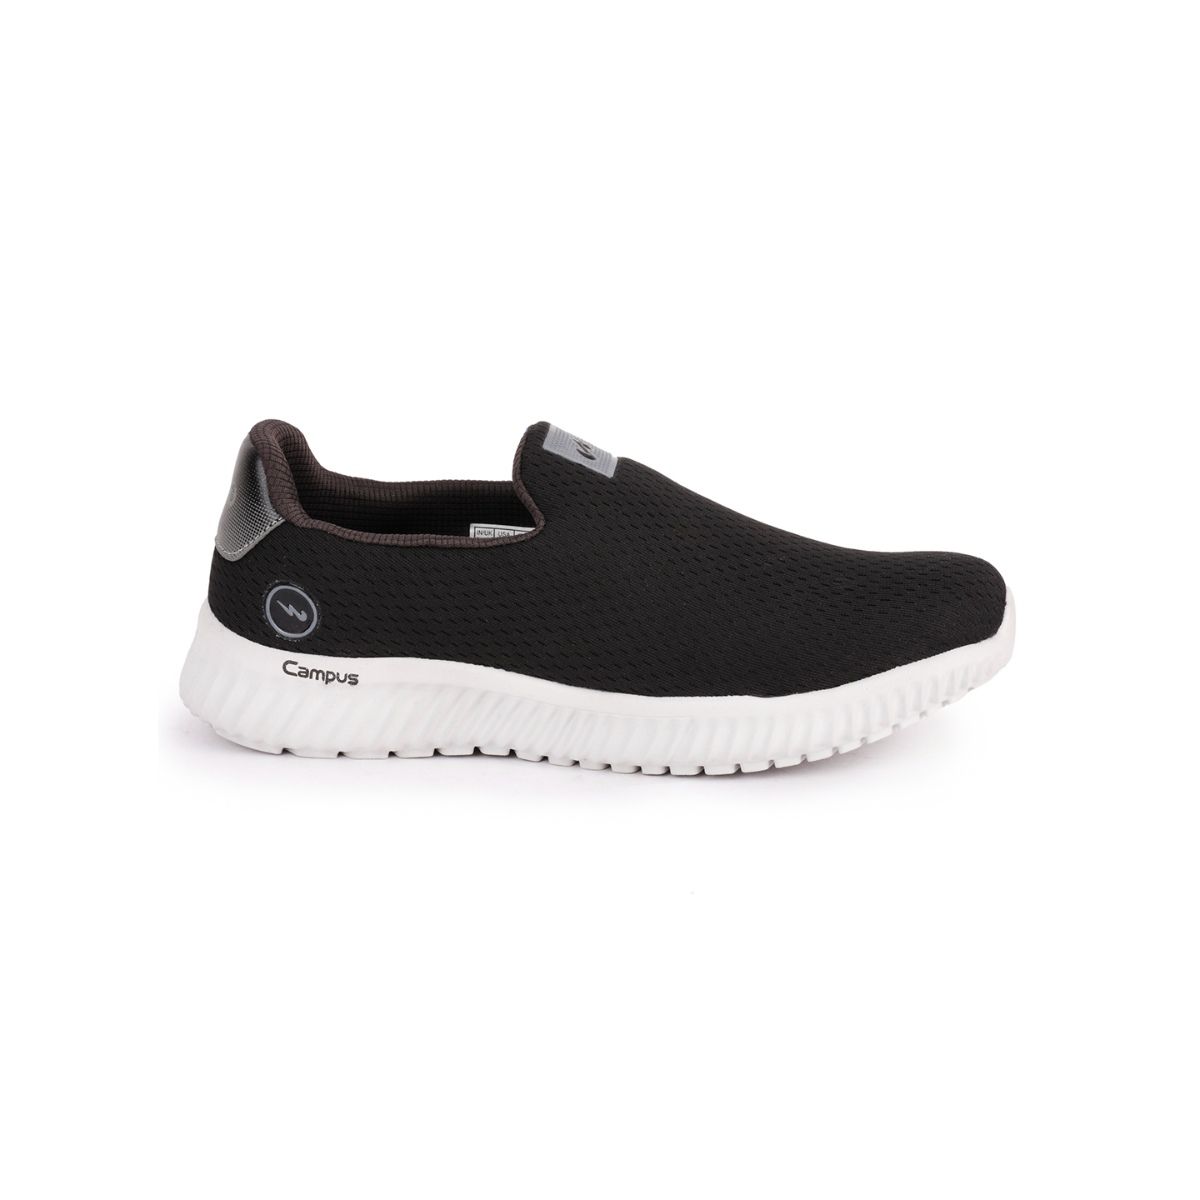 Campus Oxyfit (n) Black Men Casual Shoes: Buy Campus Oxyfit (n) Black ...